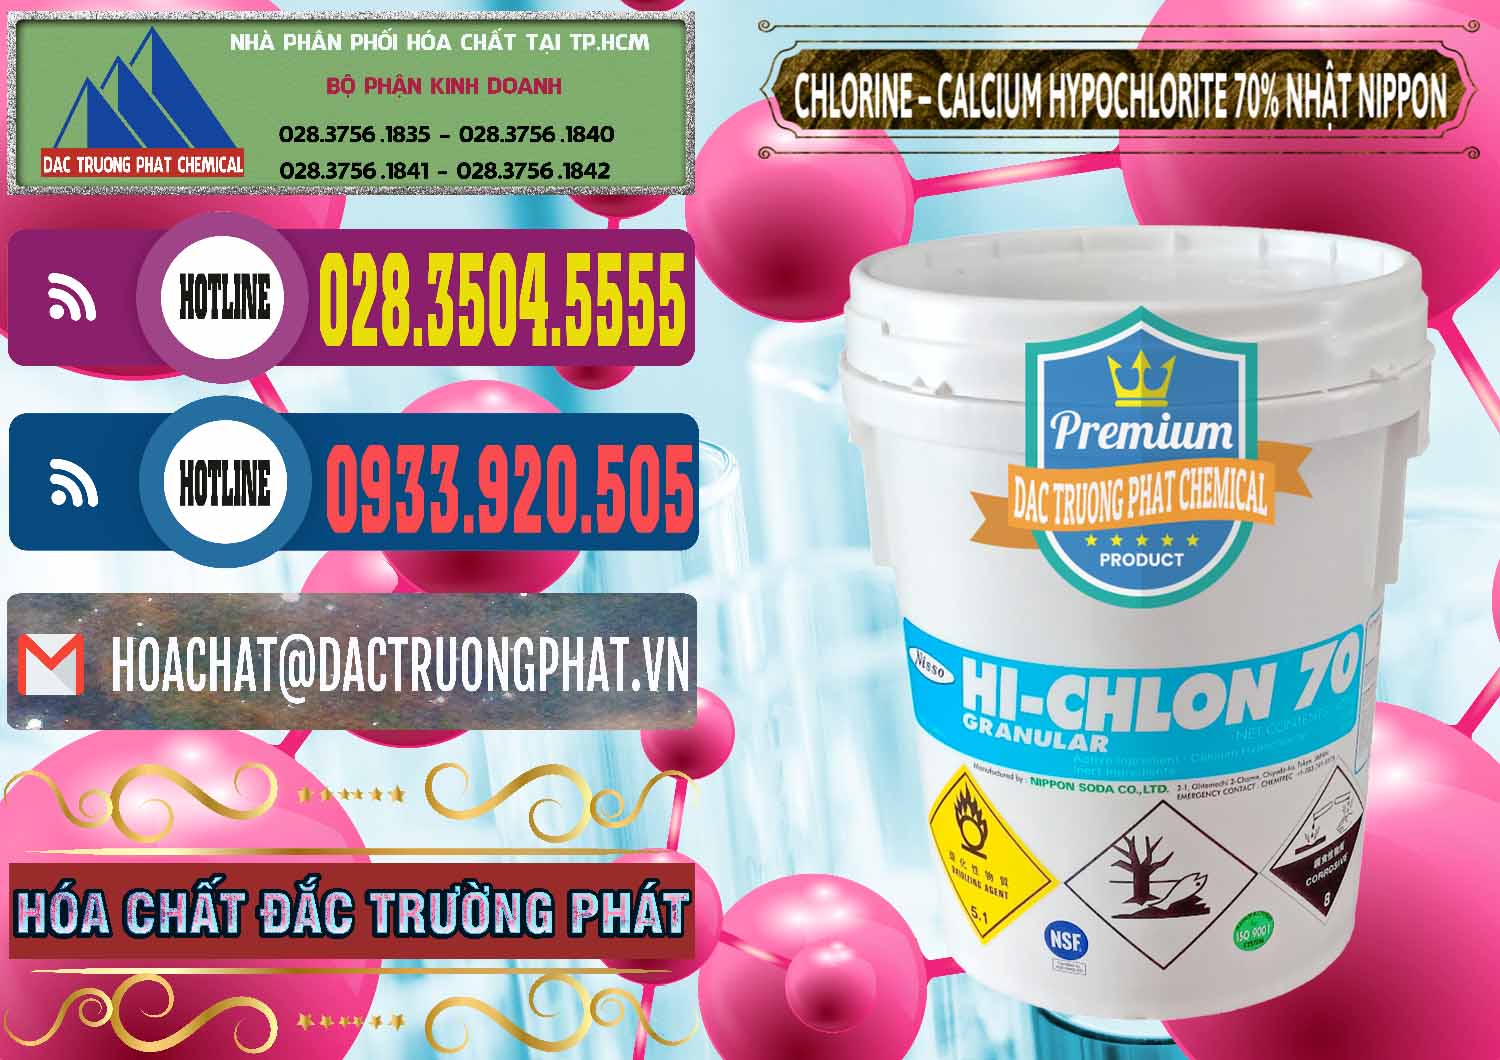 Cty chuyên bán - cung cấp Clorin – Chlorine 70% Nippon Soda Nhật Bản Japan - 0055 - Cty chuyên bán _ phân phối hóa chất tại TP.HCM - muabanhoachat.com.vn